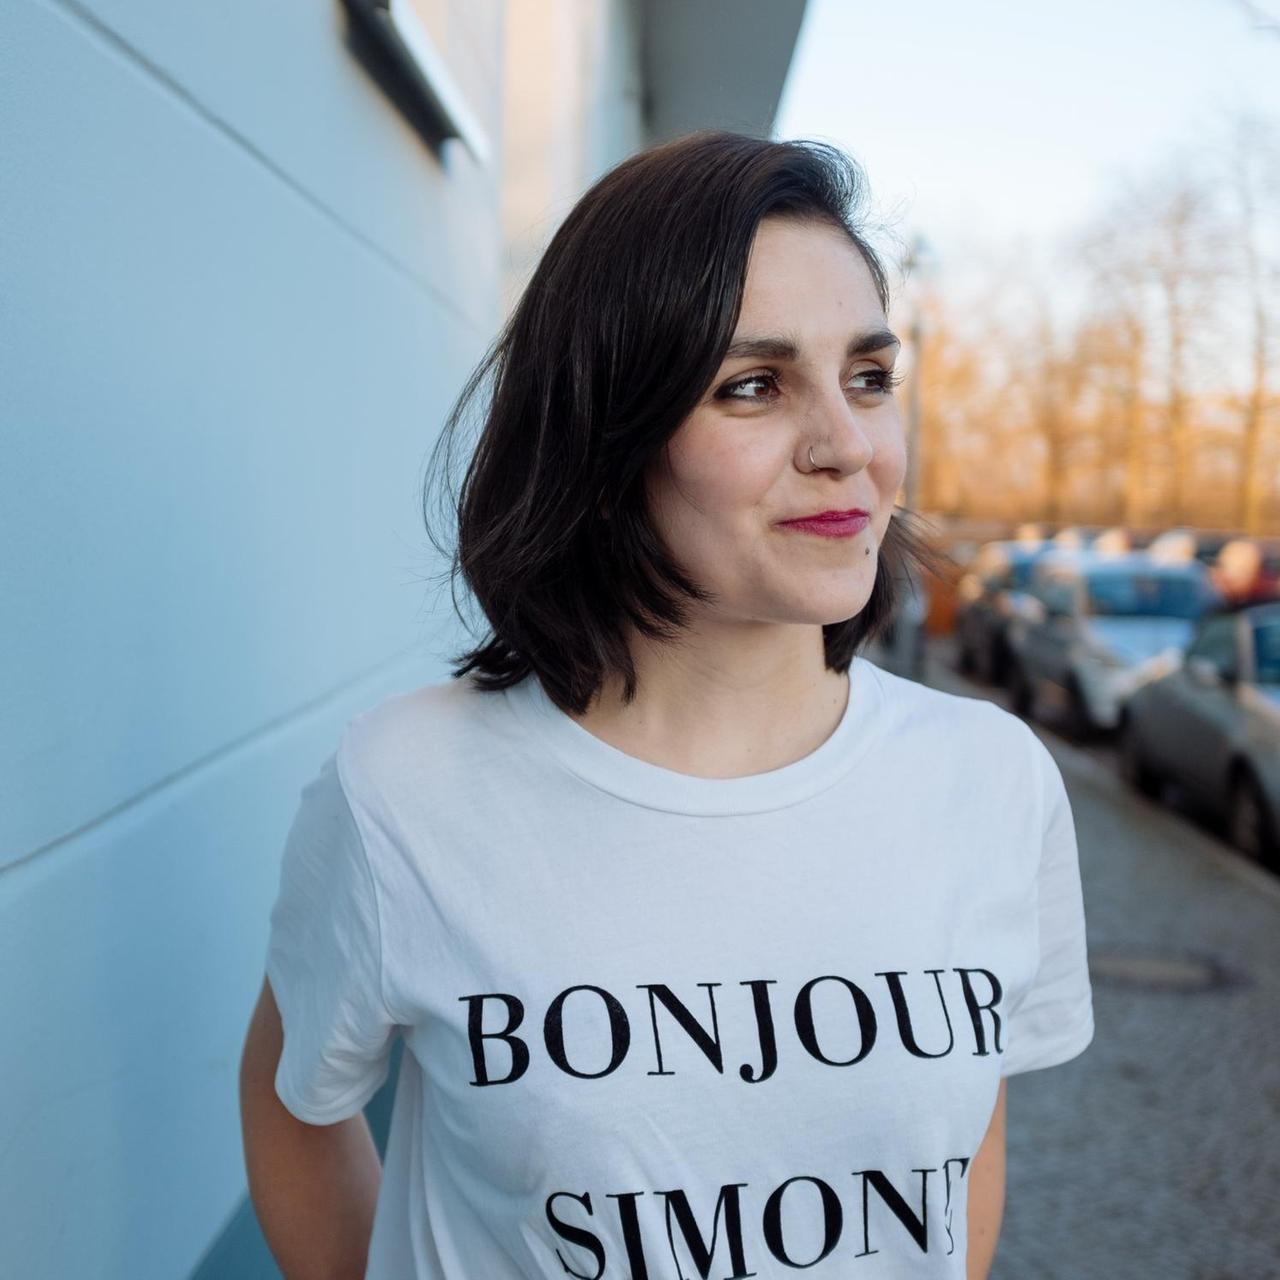 Die Journalistin und Autorin Julia Korbik trägt ein T-Shirt auf dem "Bonjour Simone" steht